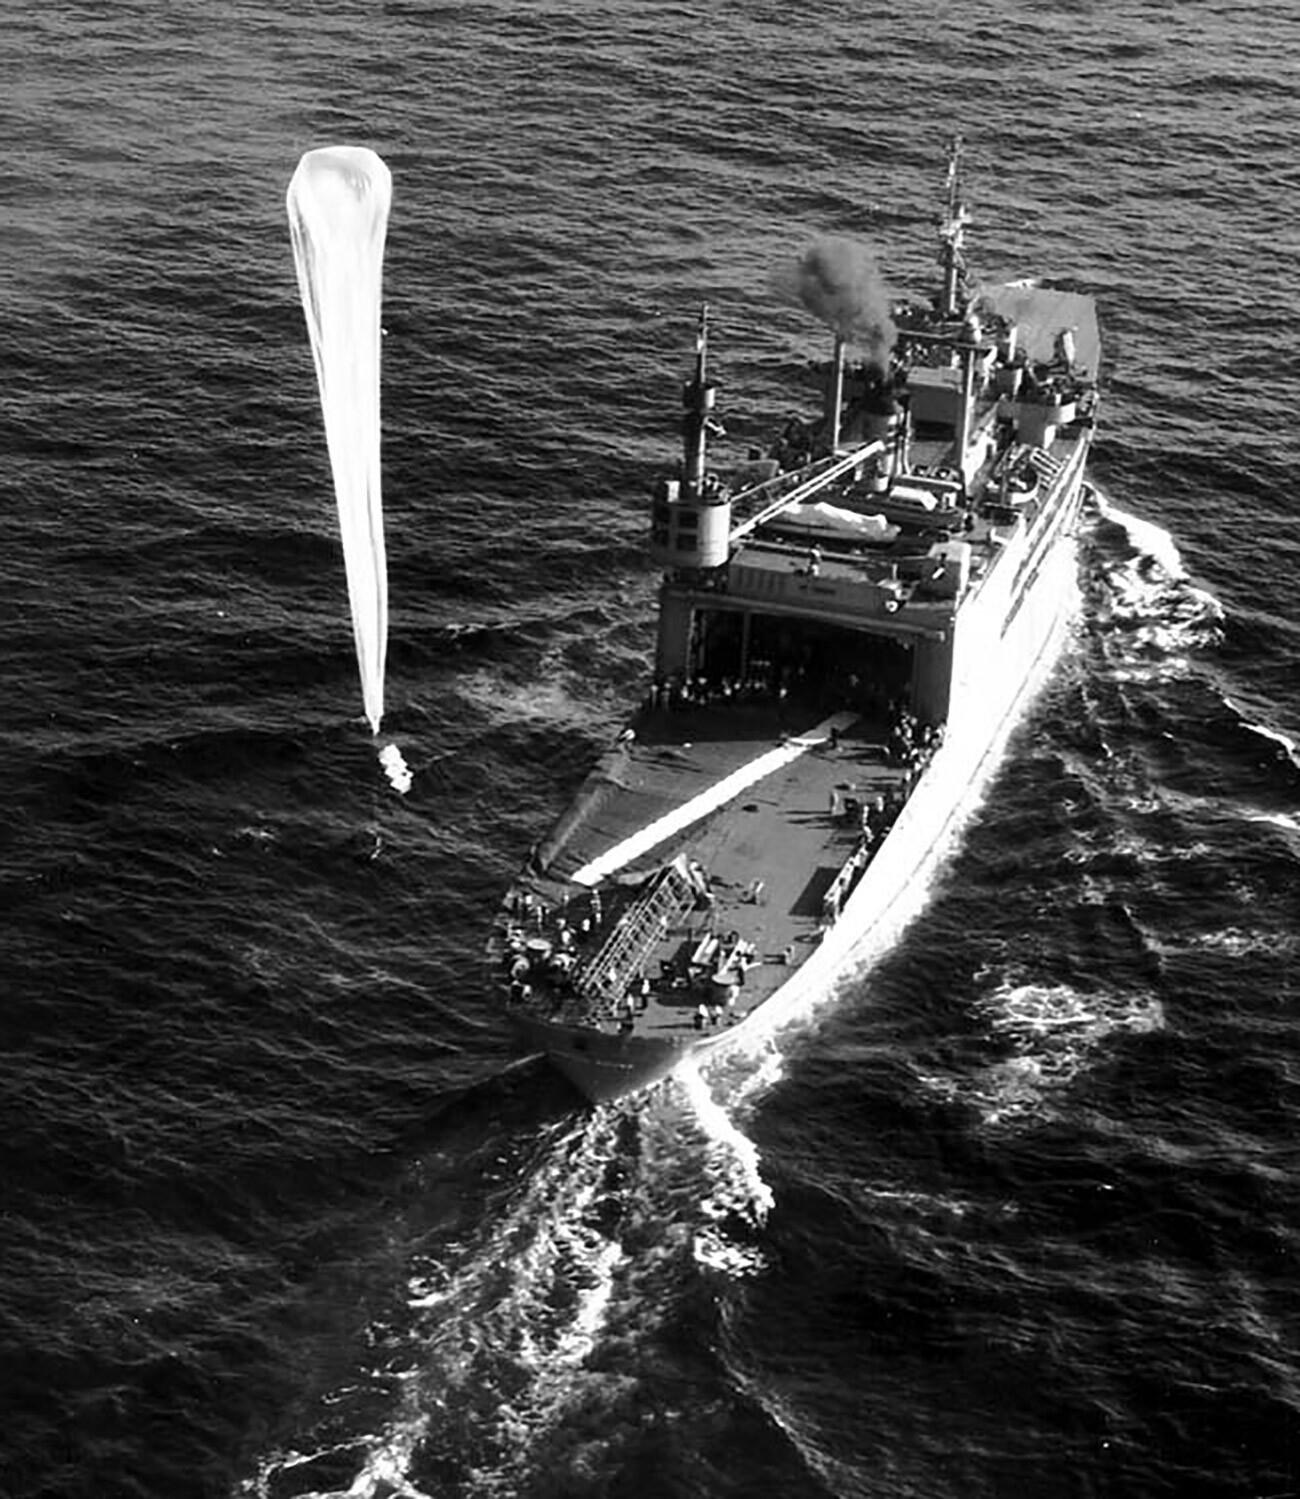  Skyhook balloon, 31 март 1949 г.